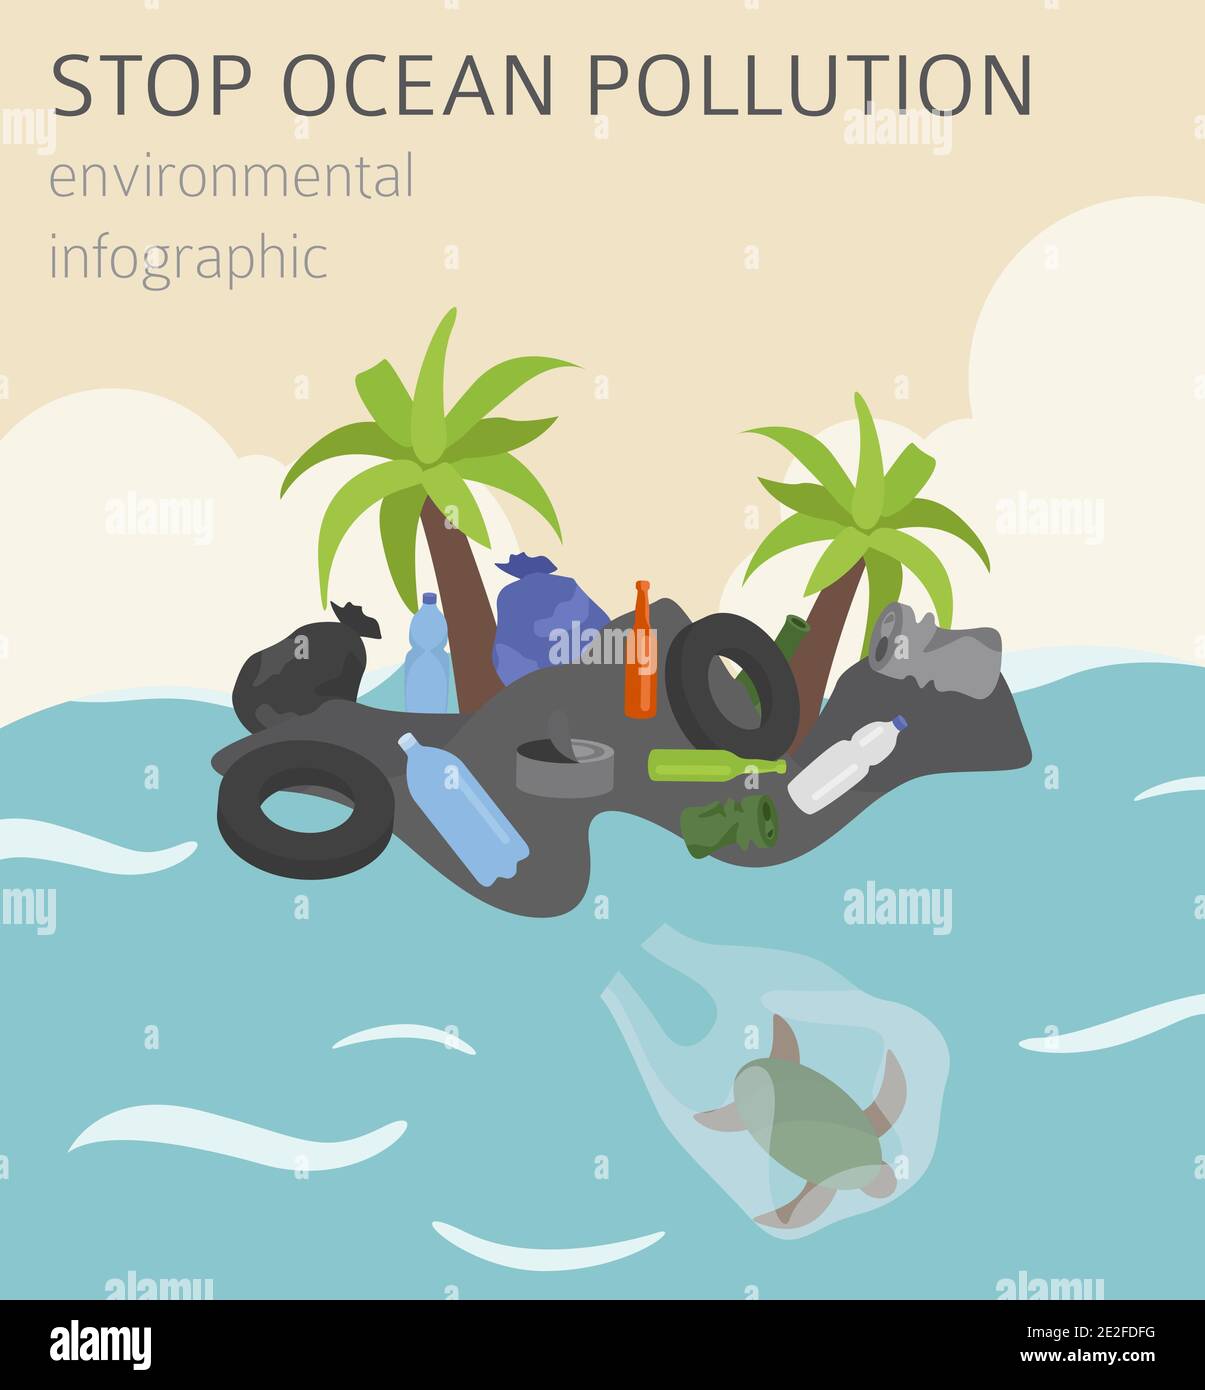 Problèmes environnementaux mondiaux. Infographie isométrique sur la pollution des océans. Illustration vectorielle Illustration de Vecteur